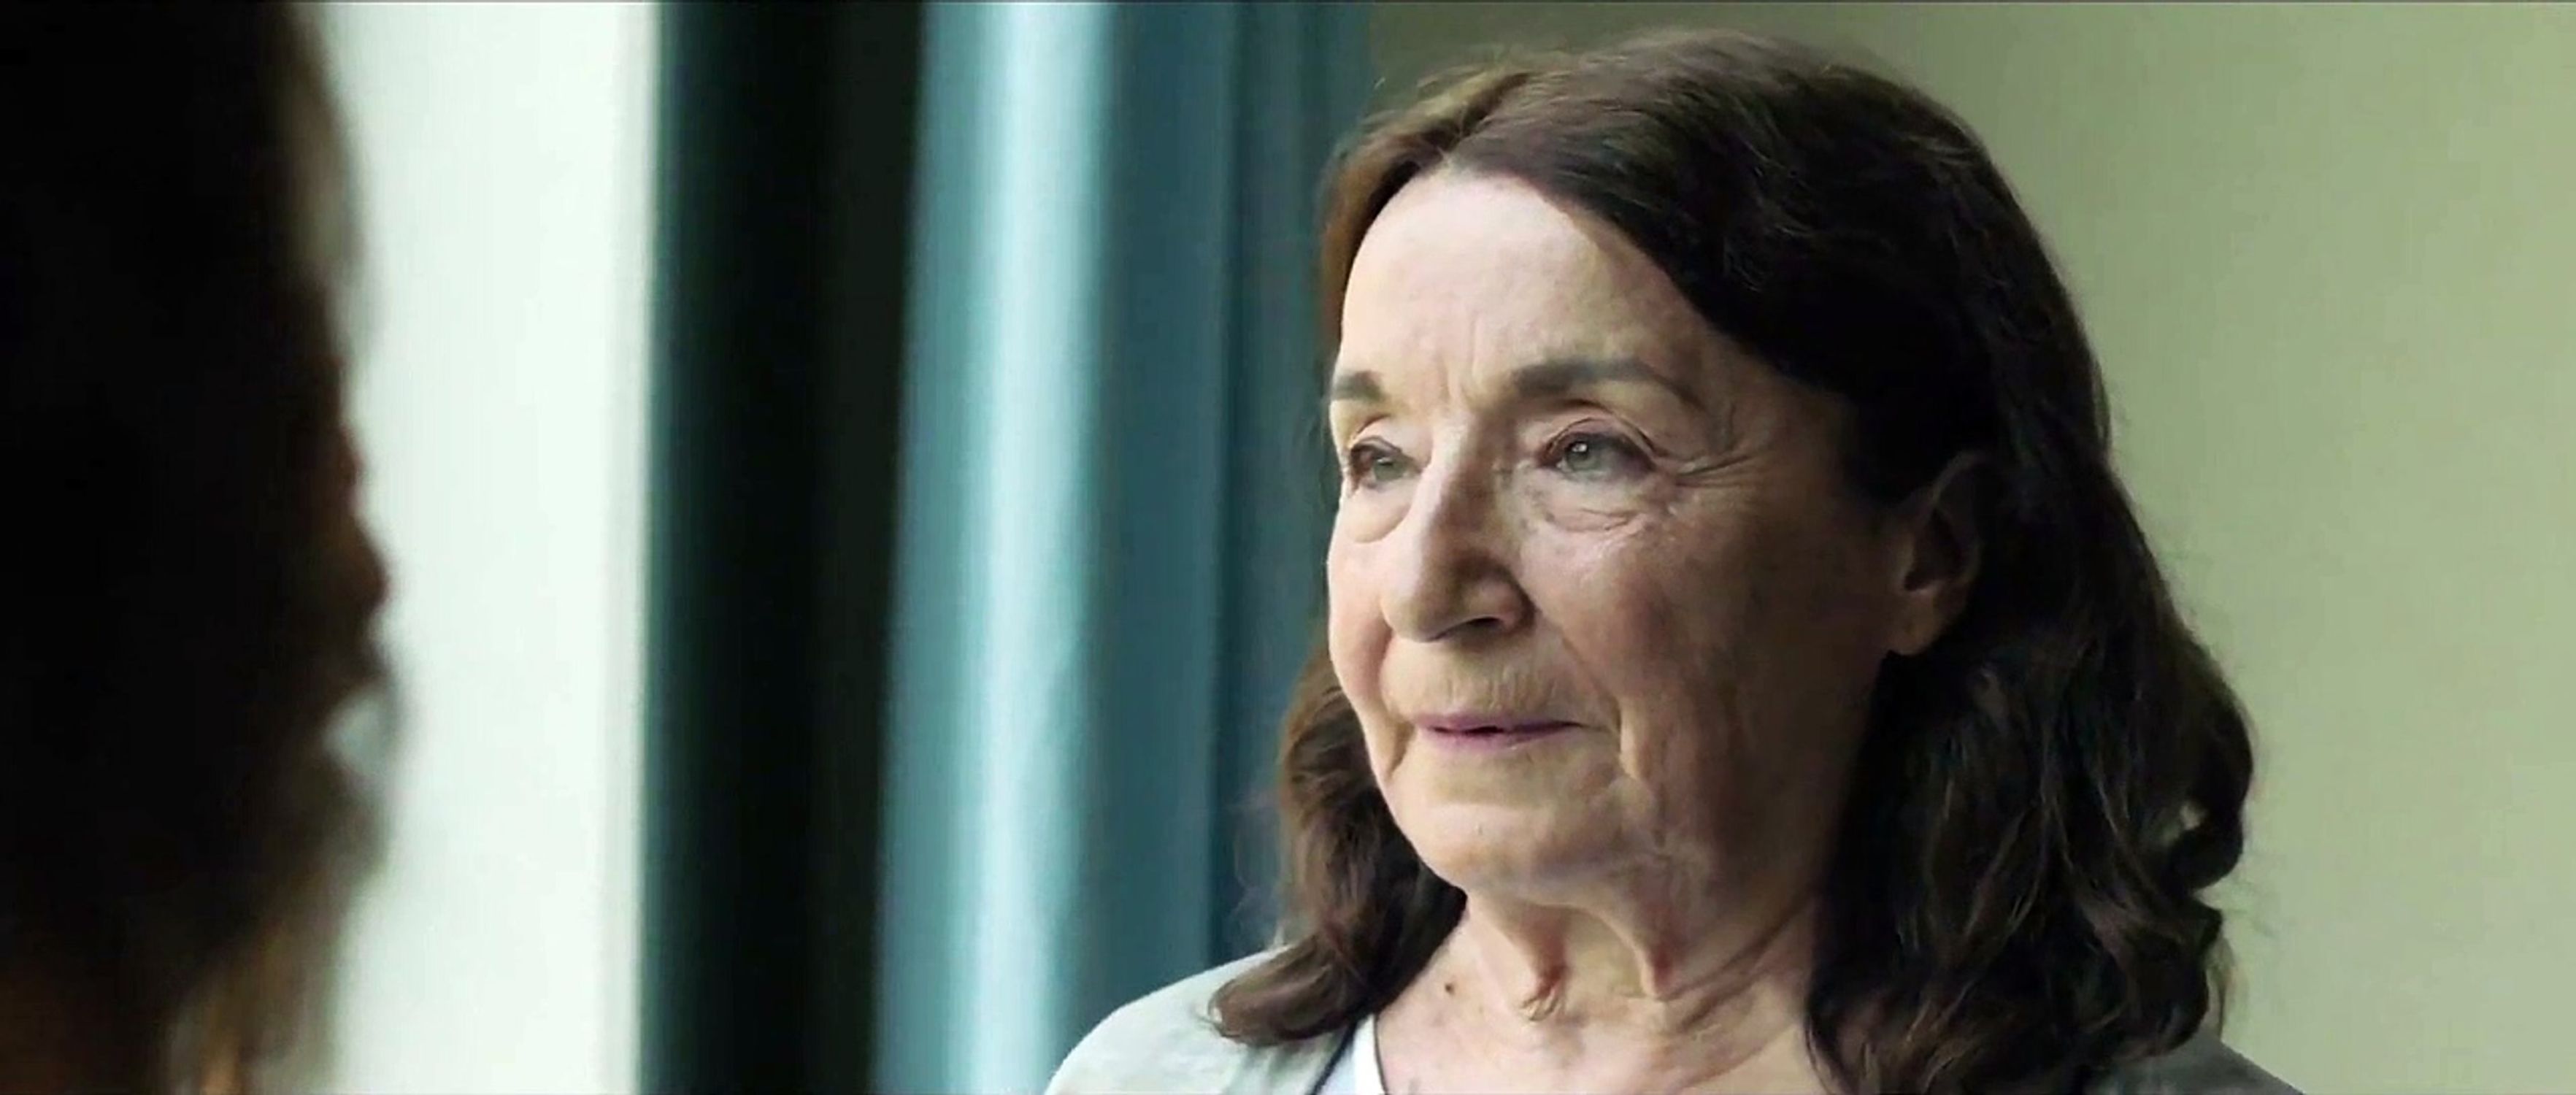 Petra Martínez, sobre su primera nominación con 77 años: "Ya puedo decir que he optado a un Goya"